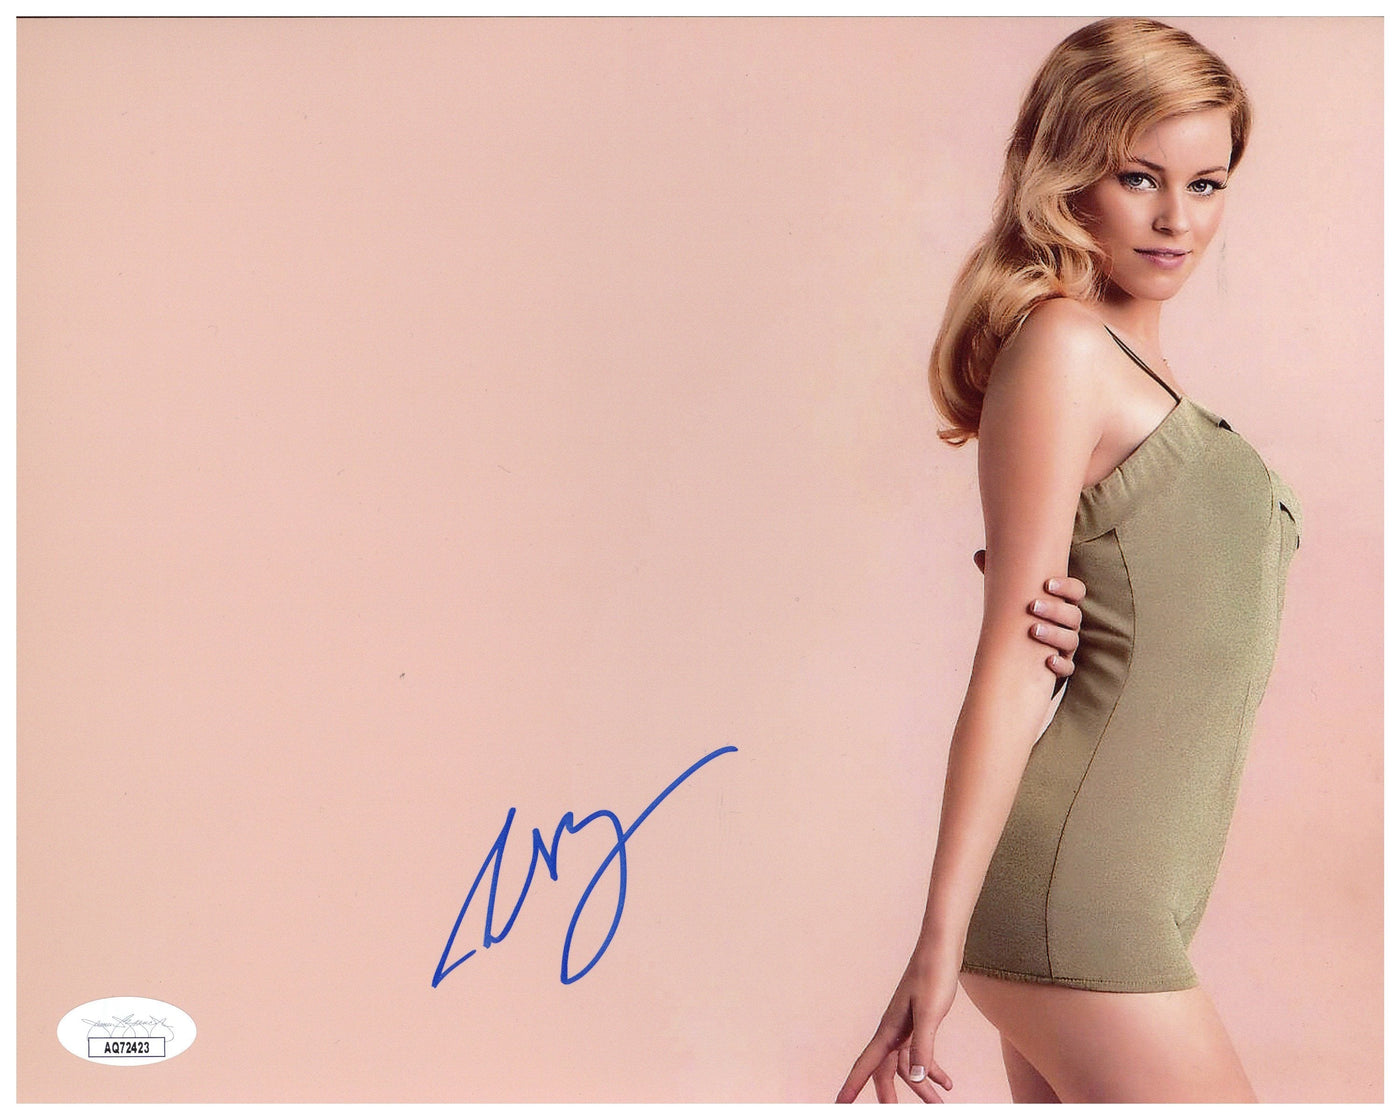 Elizabeth Banks Signed 8x10 Photo The Hunger Games Autographed JSA COA 2